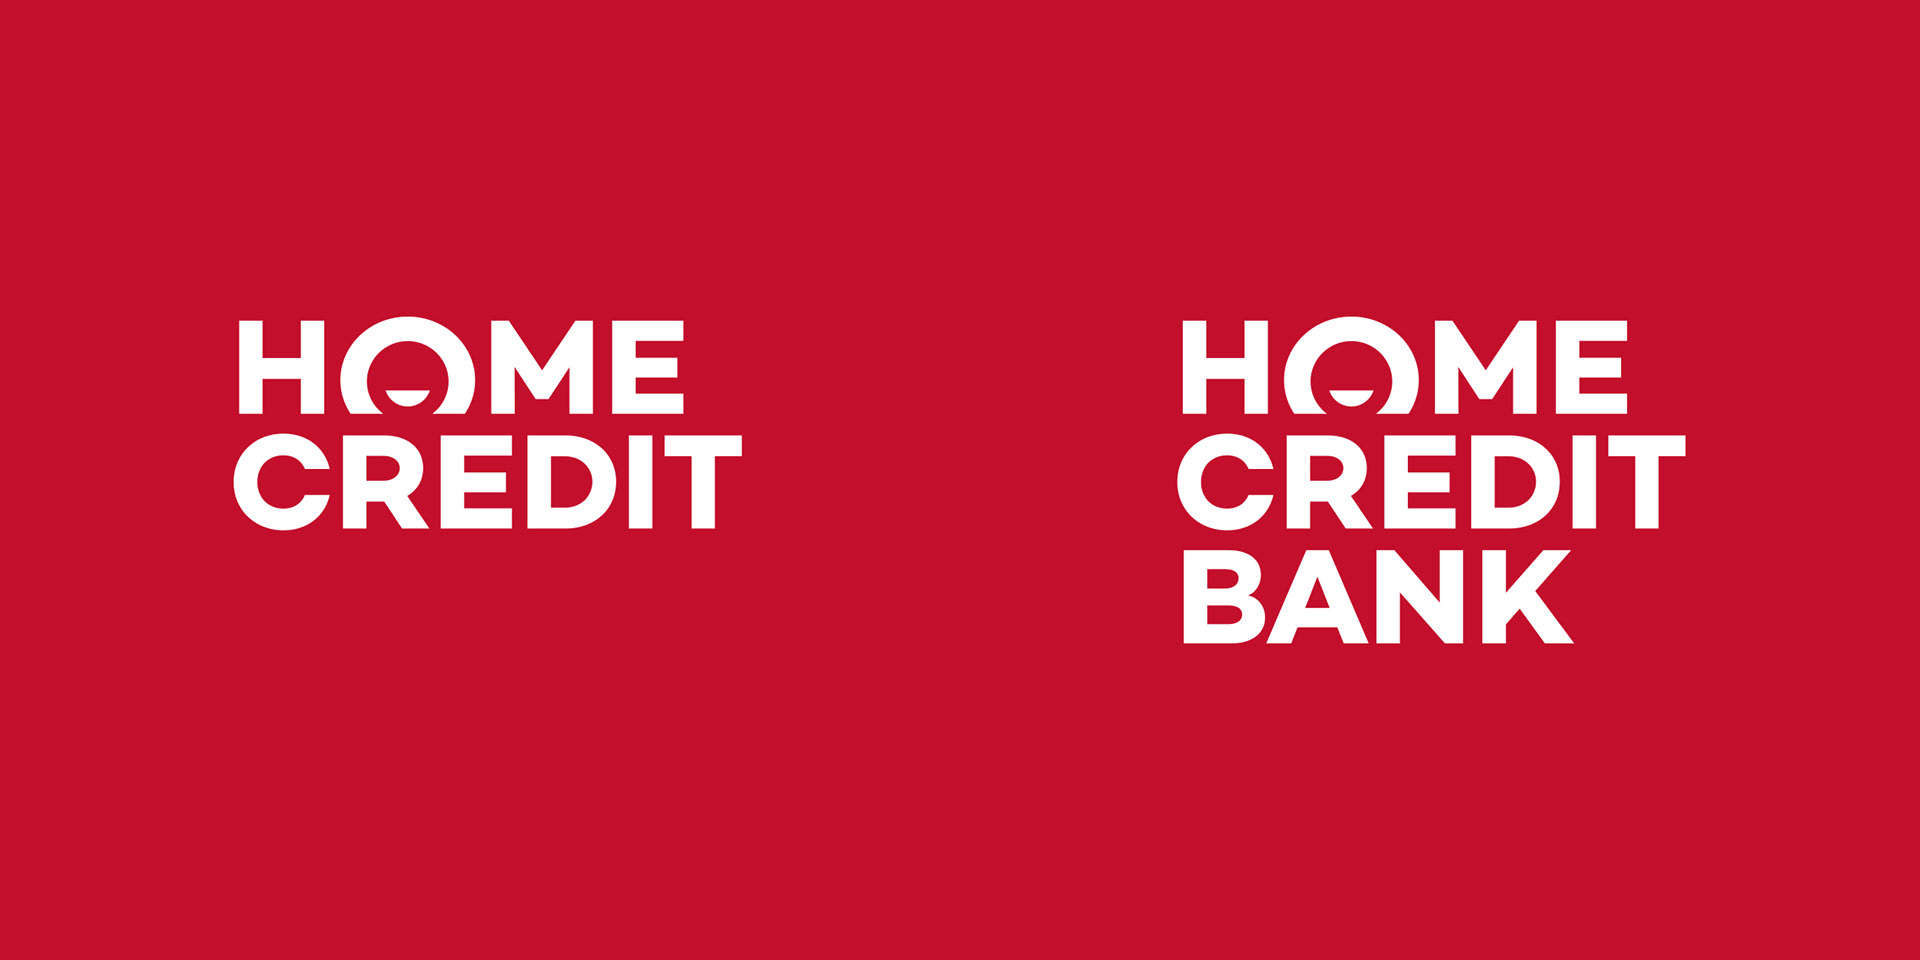 Хоум банк название. Хоум кредит банк. Банк "хоум кредит" логоип. Логотип хоум банка. Эмблема банка хоум кредит.